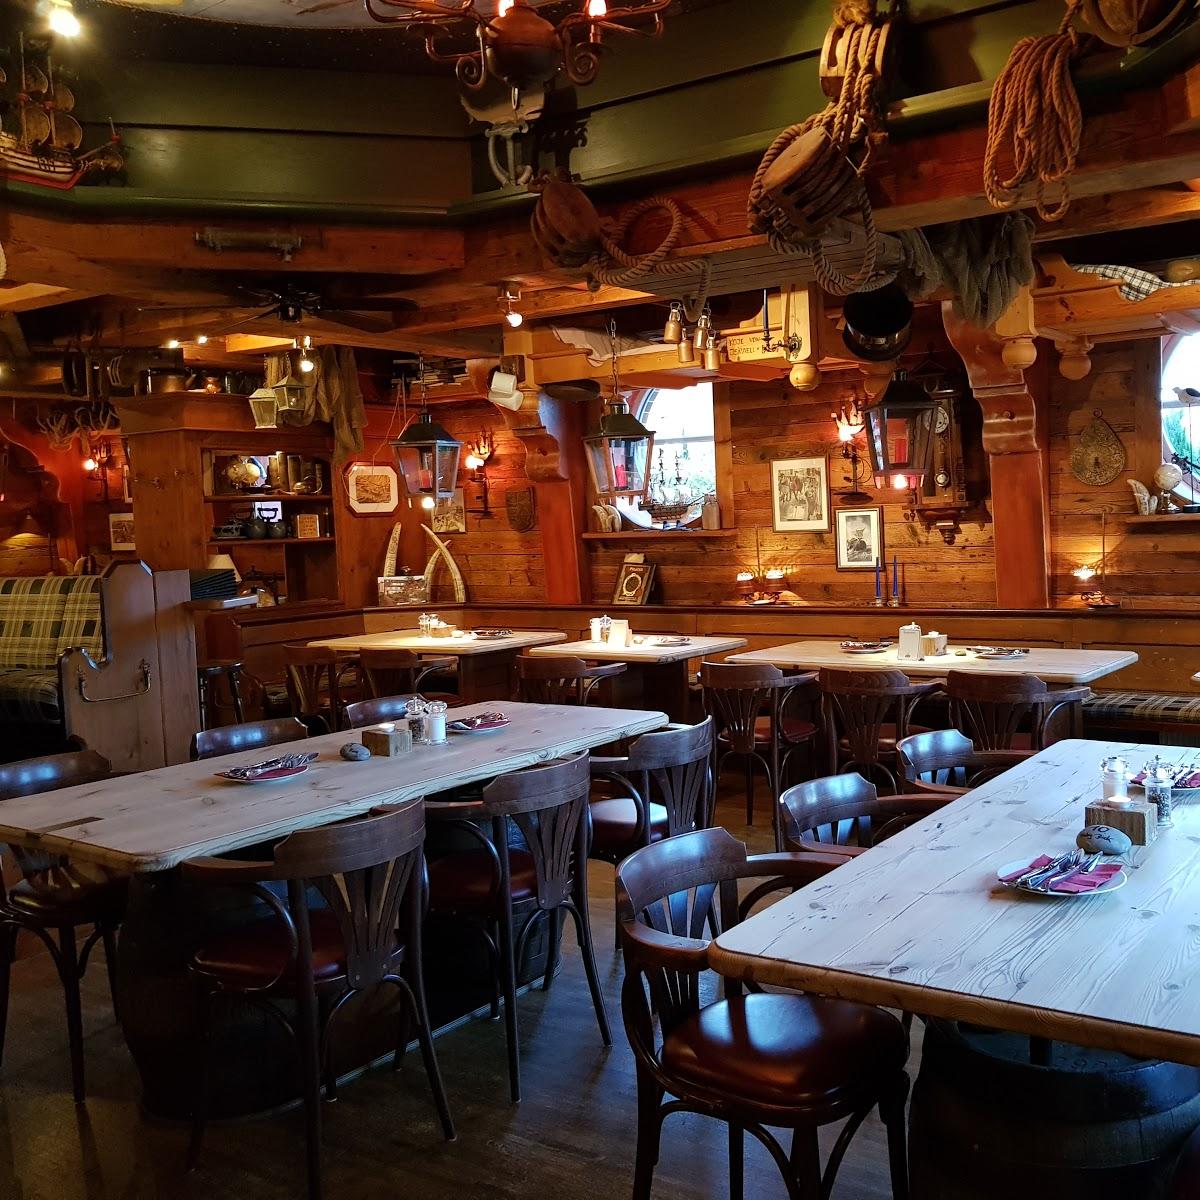 Restaurant "Moby Dick Restaurant" in Baltrum